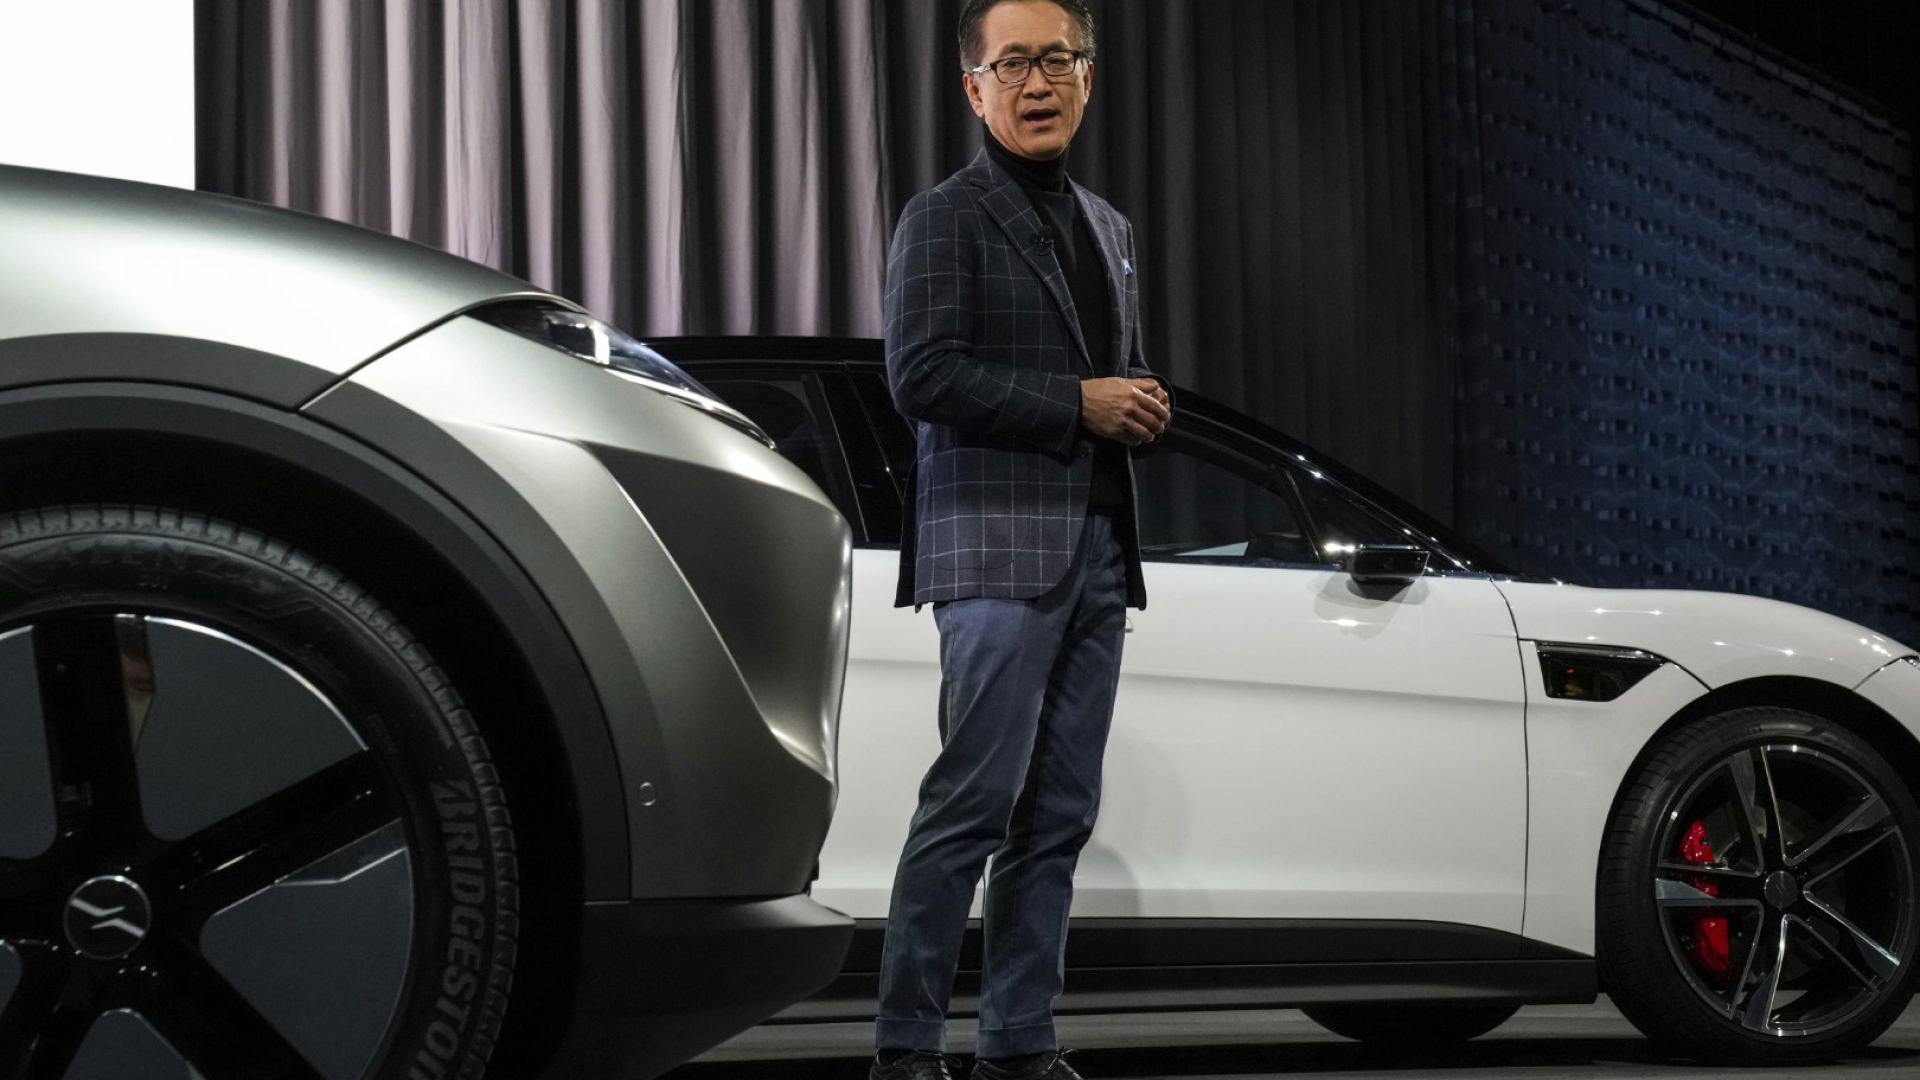 Кеничиро Йошида, председател и главен изпълнителен директор на Sony Group Corporation, говори за линията електрически превозни средства Vision-S по време на пресконференцията на Sony на технологичното шоу CES, вторник, 4 януари 2022 г., в Лас Вегас